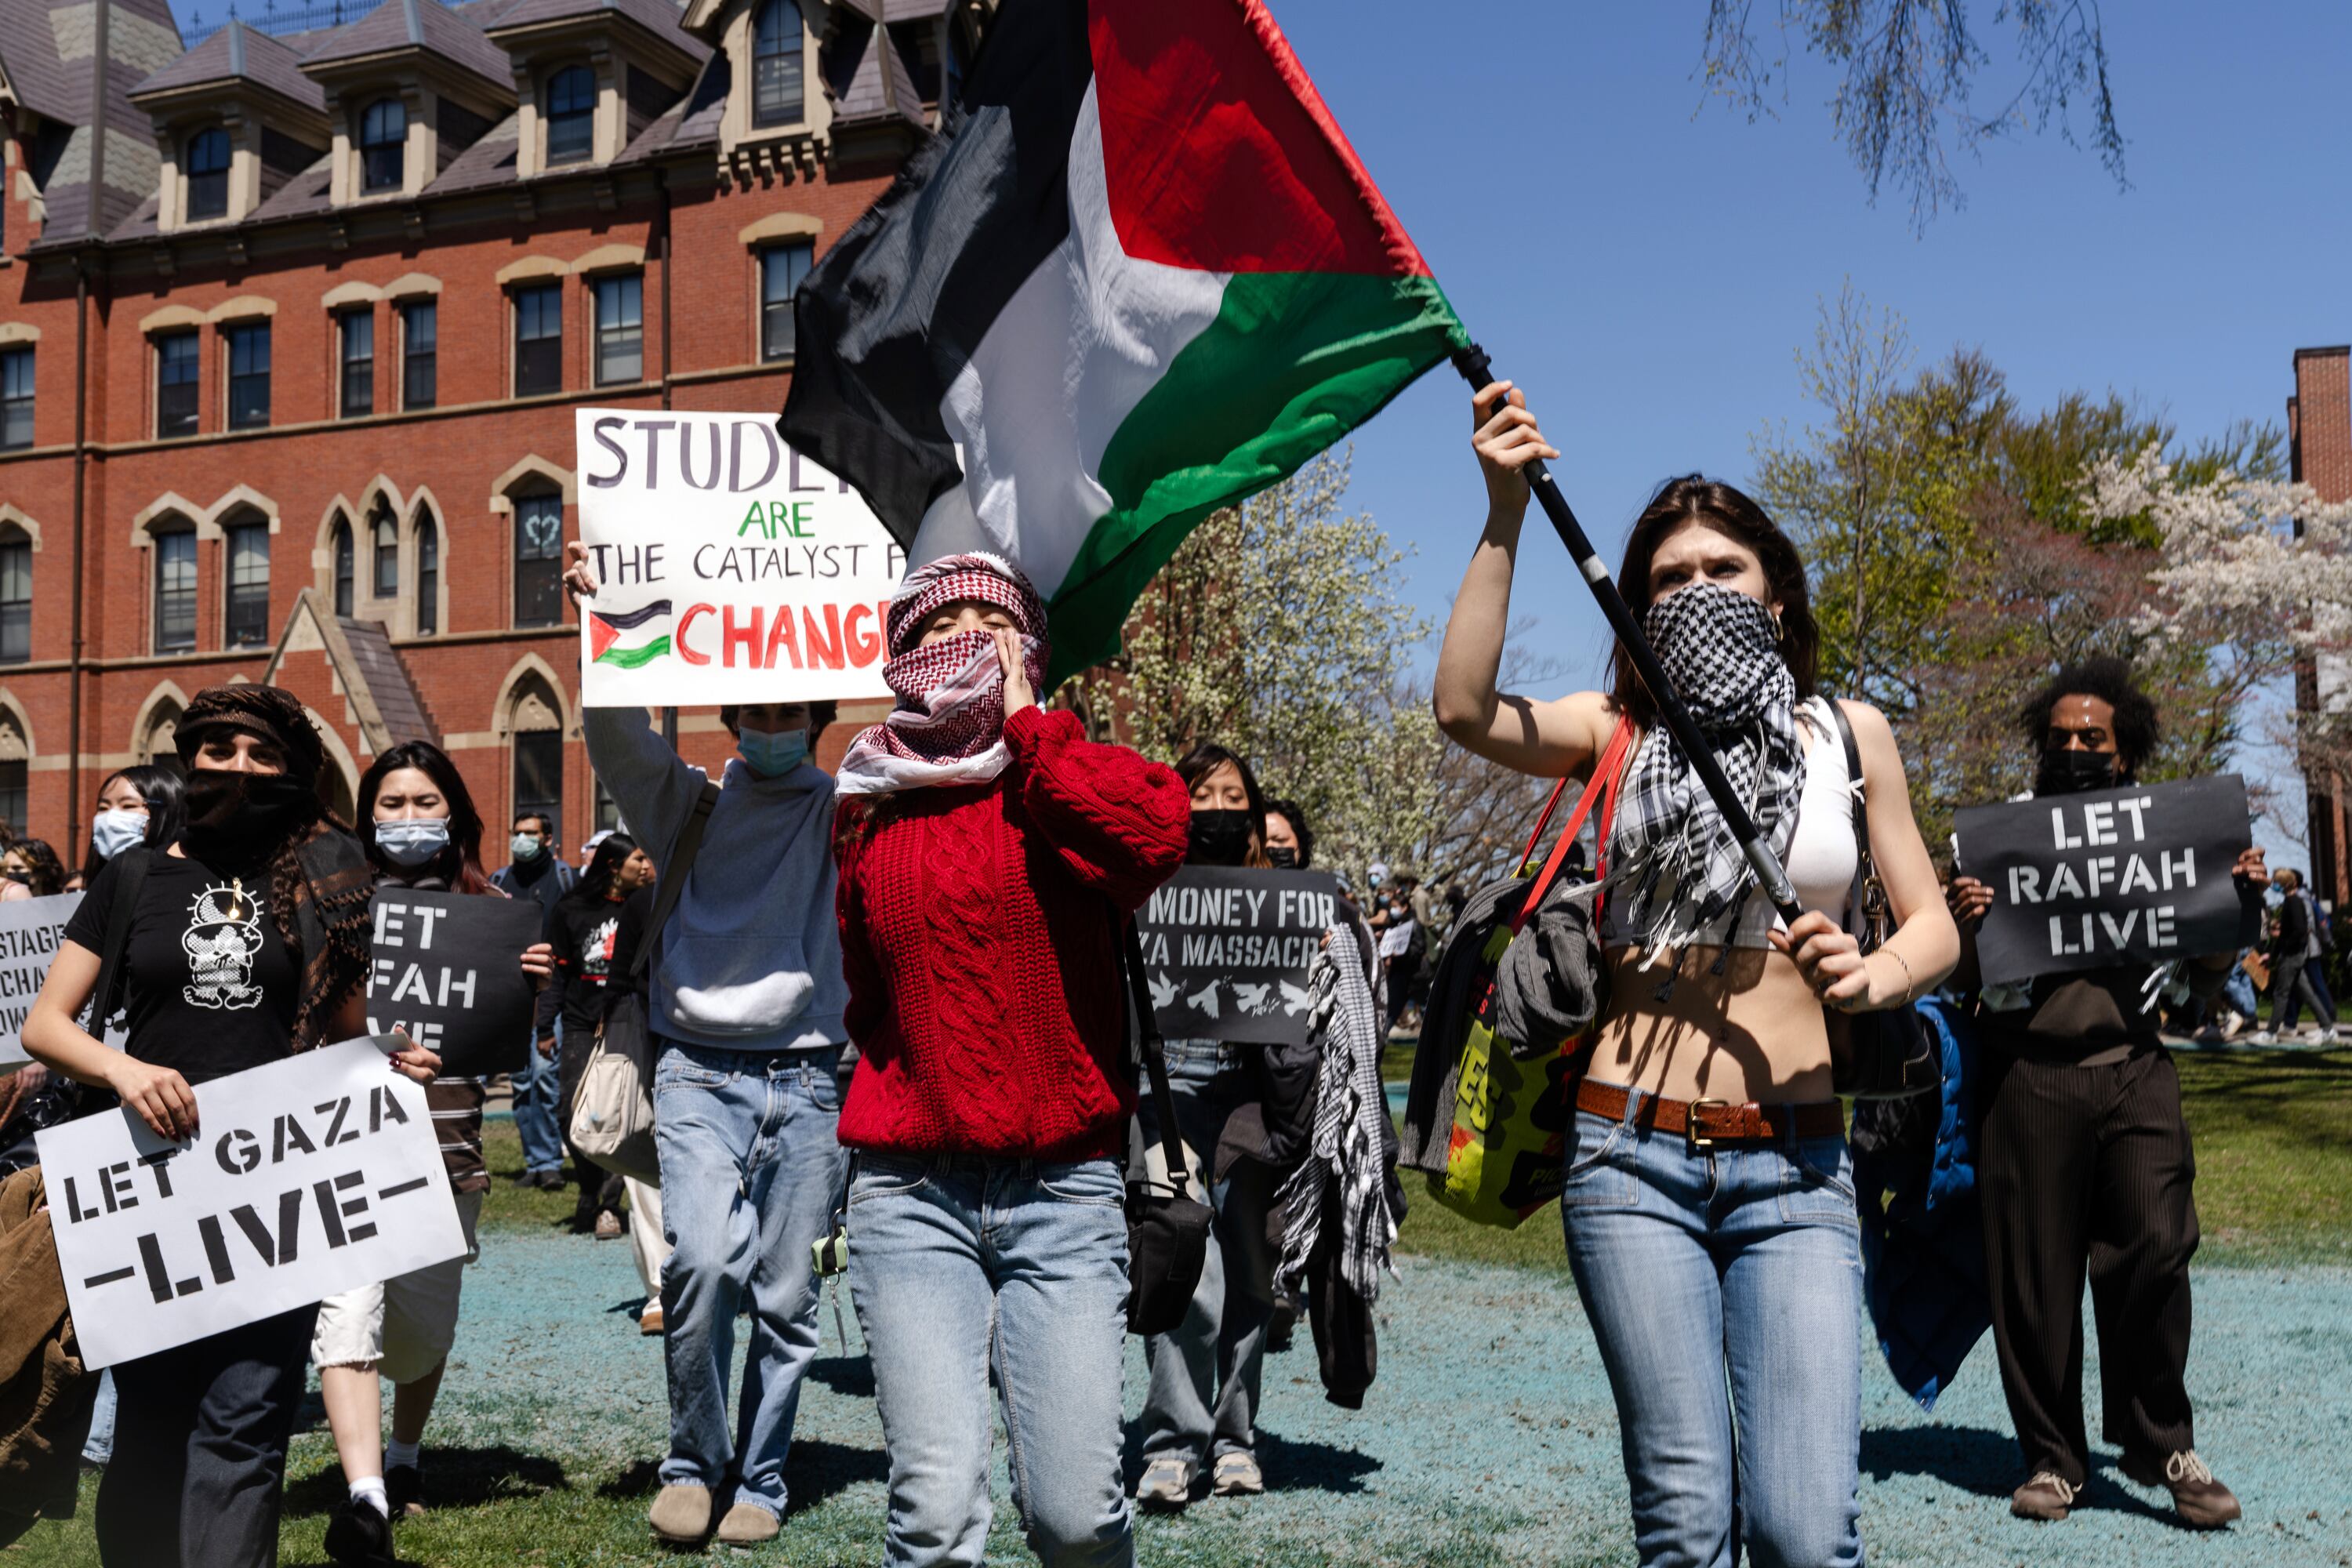 La crisis en los campus de EE.UU.: choque de visiones en la protesta en el campamento de una universidad en Washington